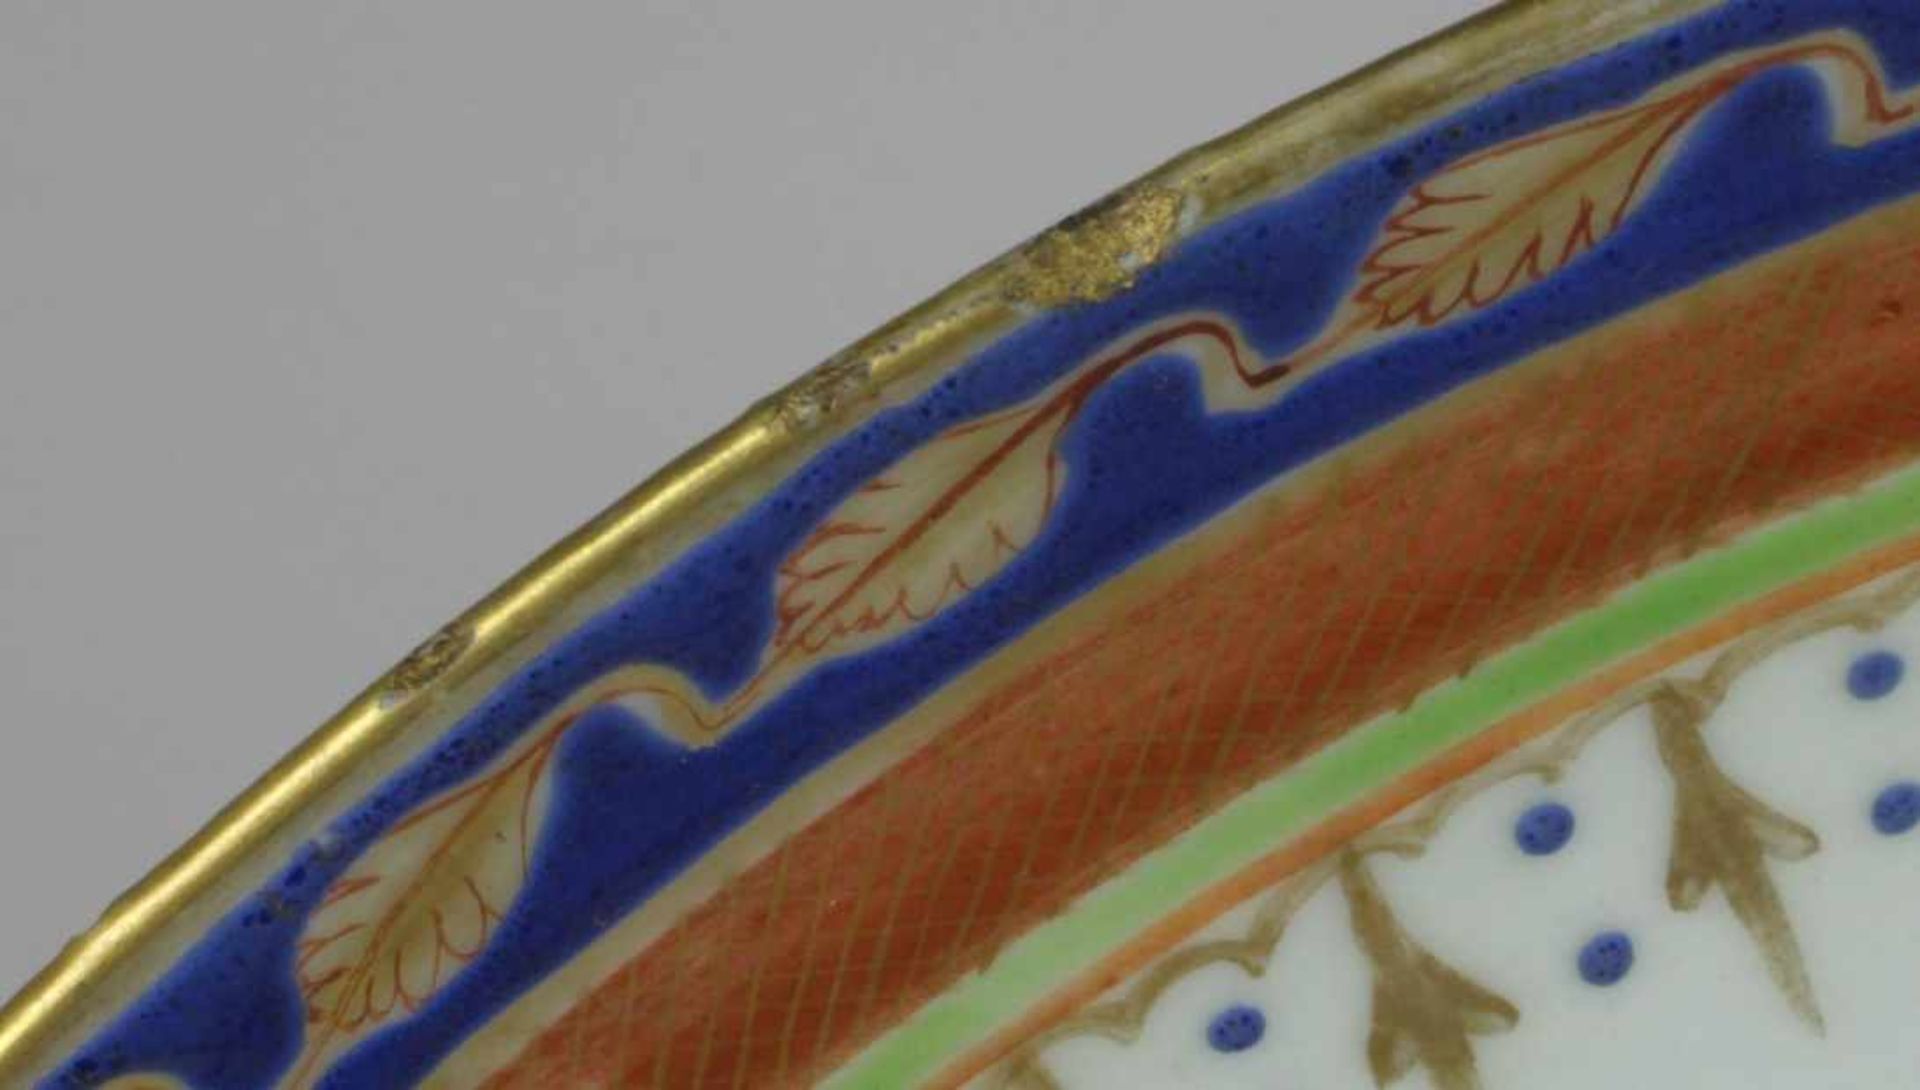 Porzellan-Zierteller, China, wohl 18. Jh., über kleinem Standring runde, gemuldete Form,< - Bild 3 aus 5